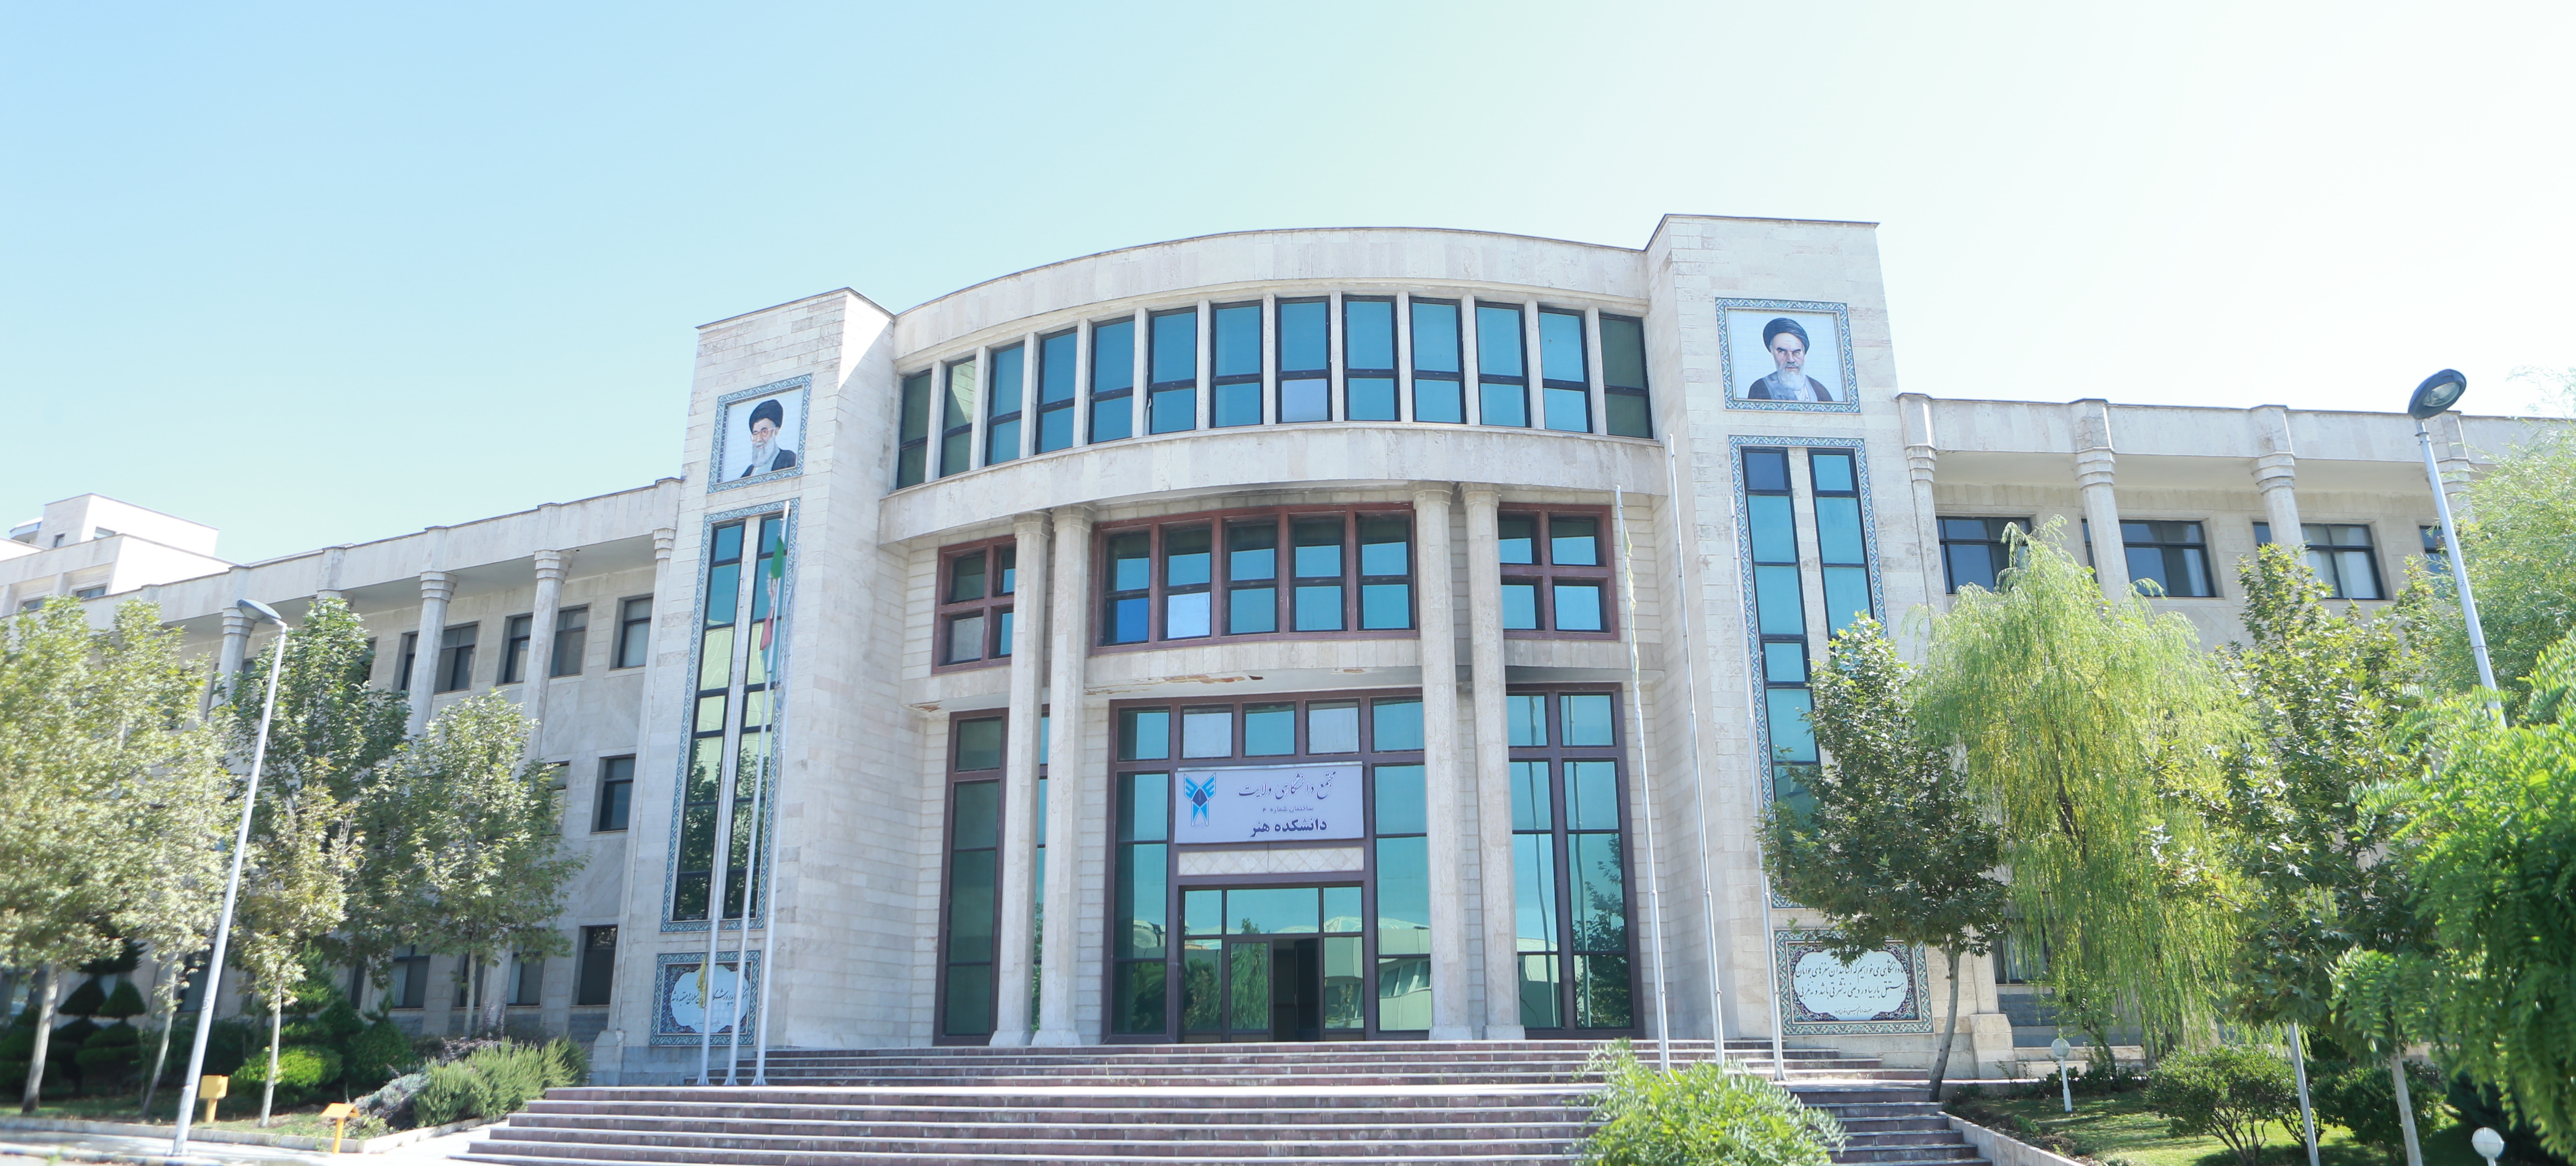 دانشگاه روانشناسي تهران مركز
